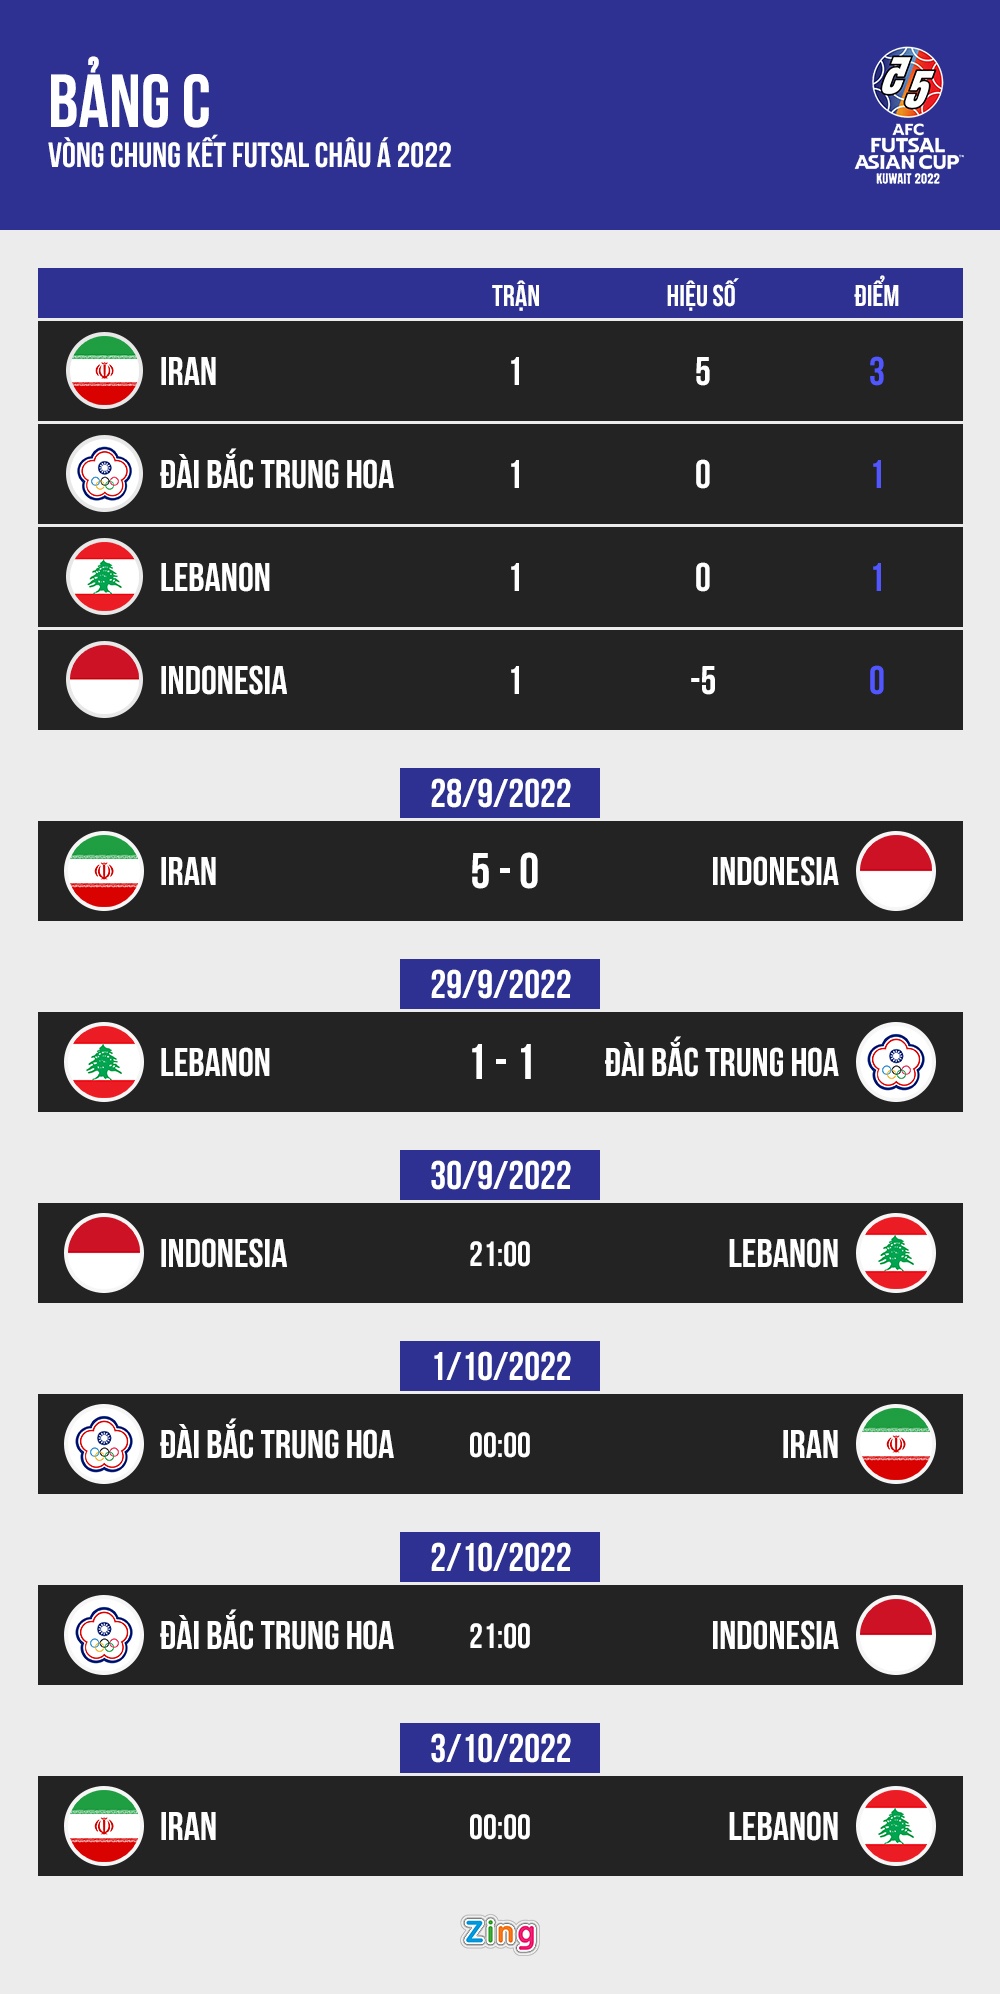 Lịch thi đấu và kết quả bảng C vòng chung kết futsal châu Á 2022. Đồ họa: Minh Phúc.